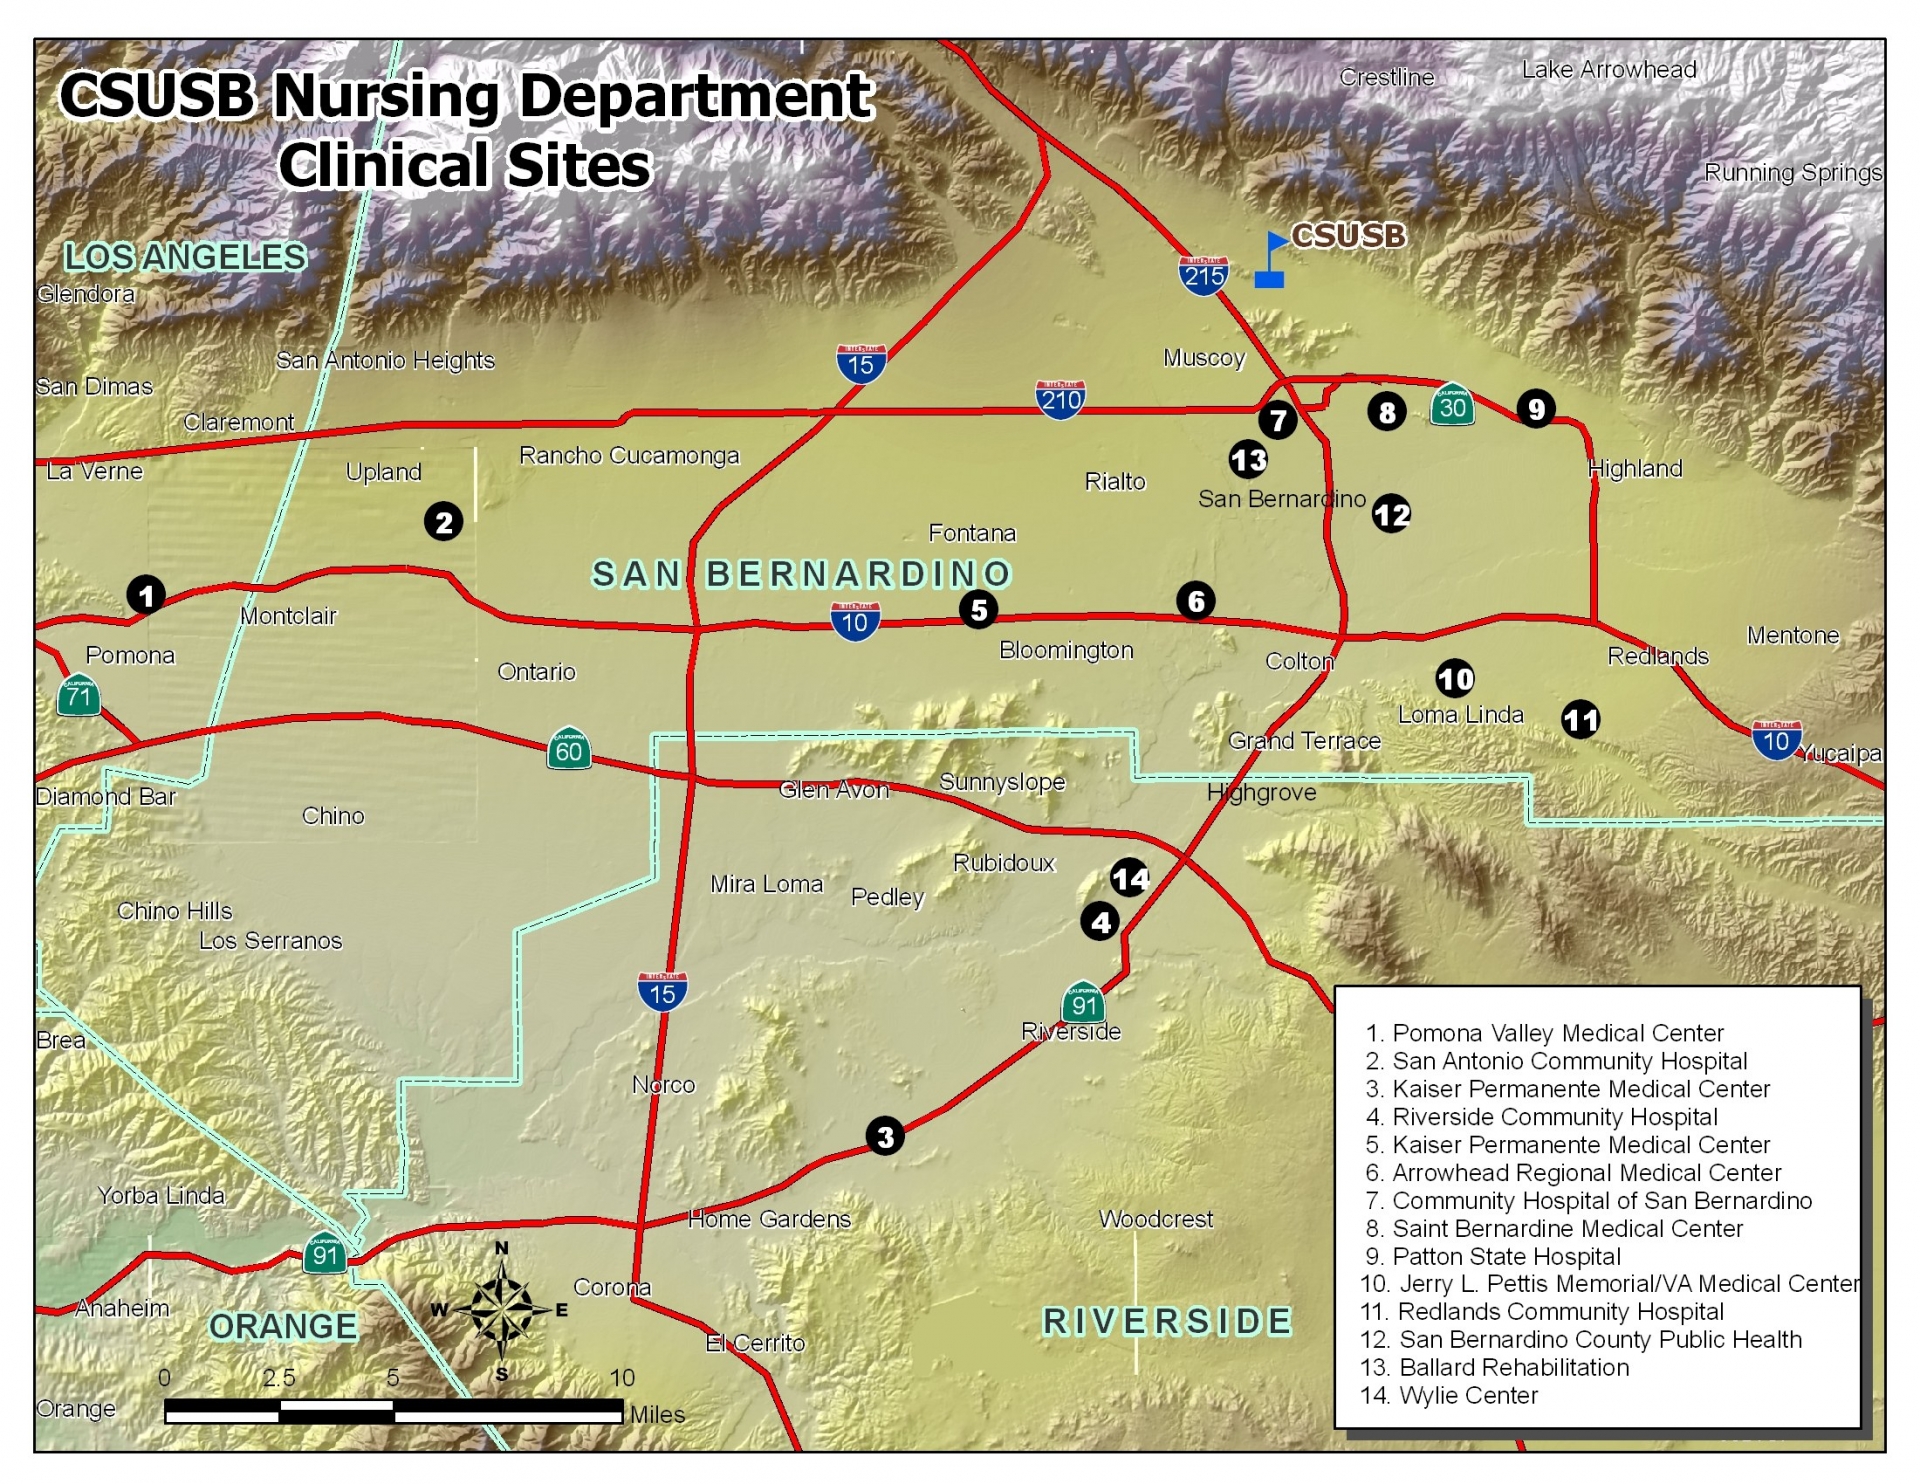 CSUSB Nursing Department Clinical Sites